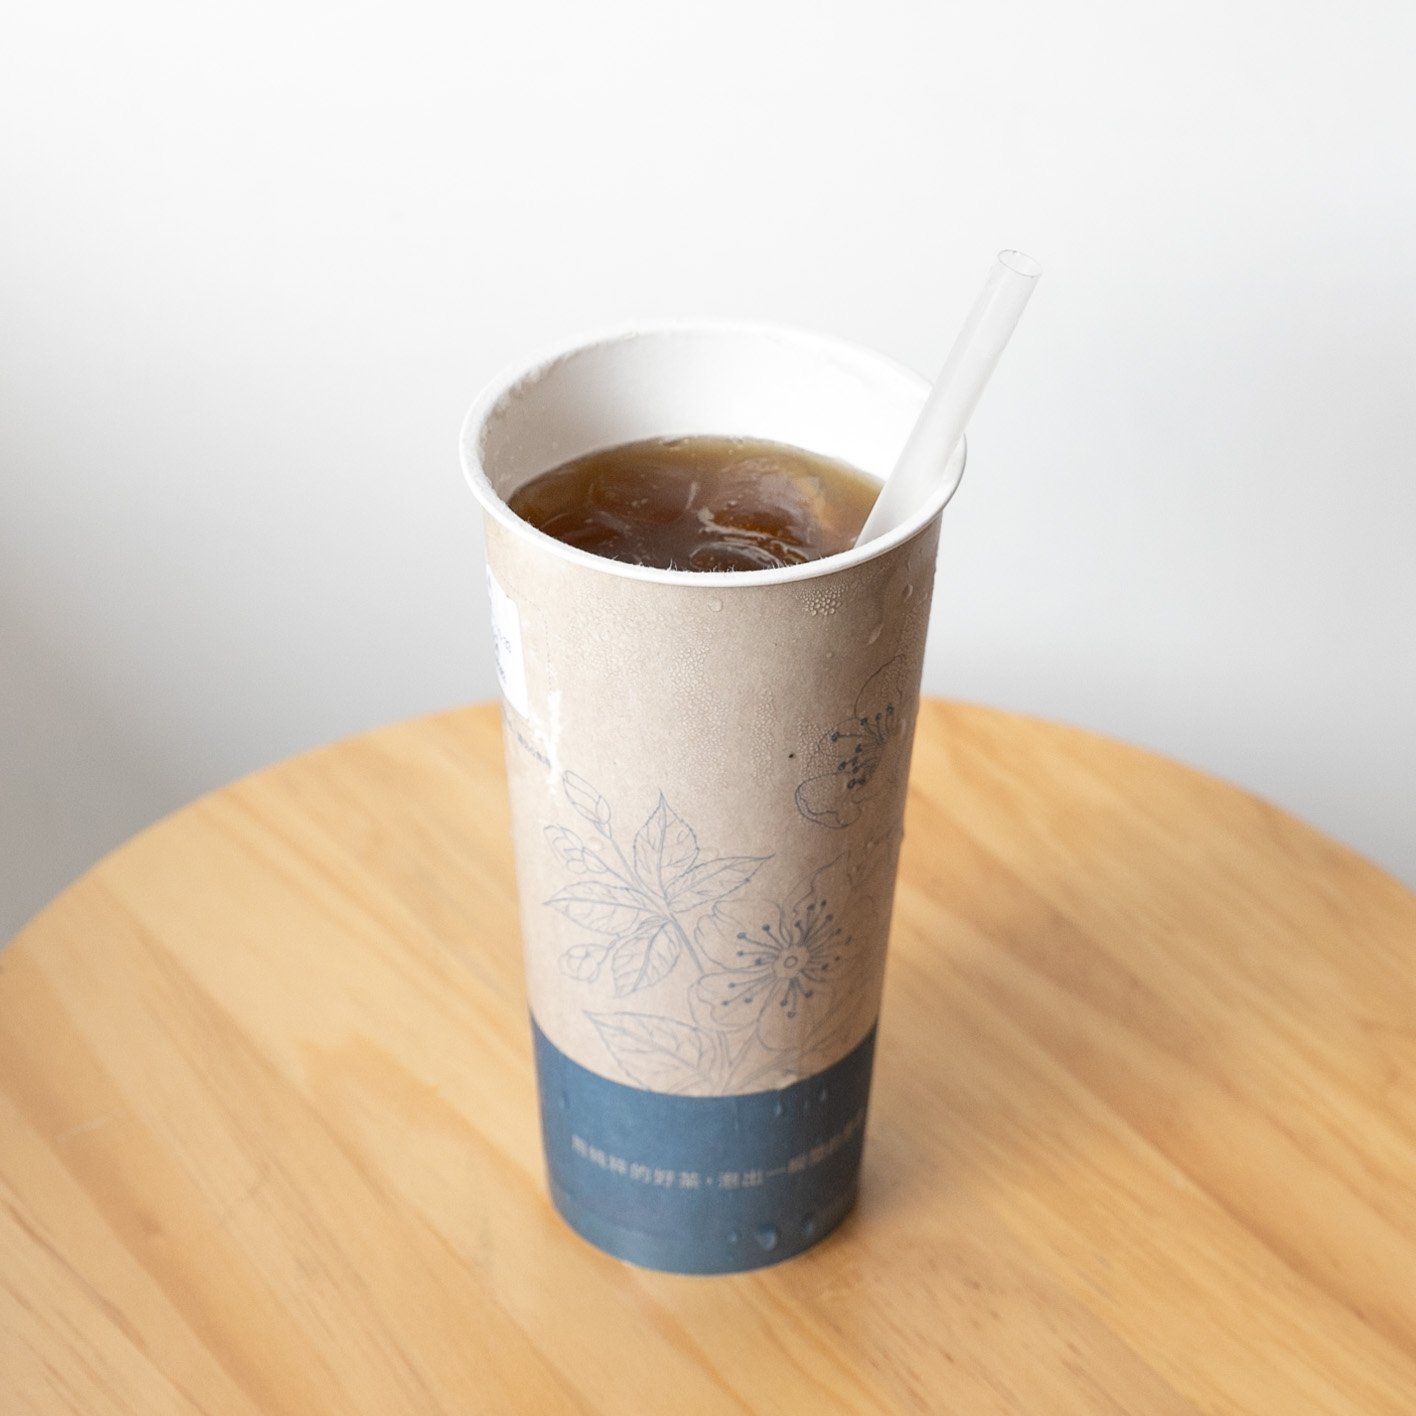 思茶 MissingTea 竹北店｜新竹｜飲料 邀請您來喝杯純粹好茶，在地 HAKKA 文化的手作飲品，新竹飲料外送推薦。